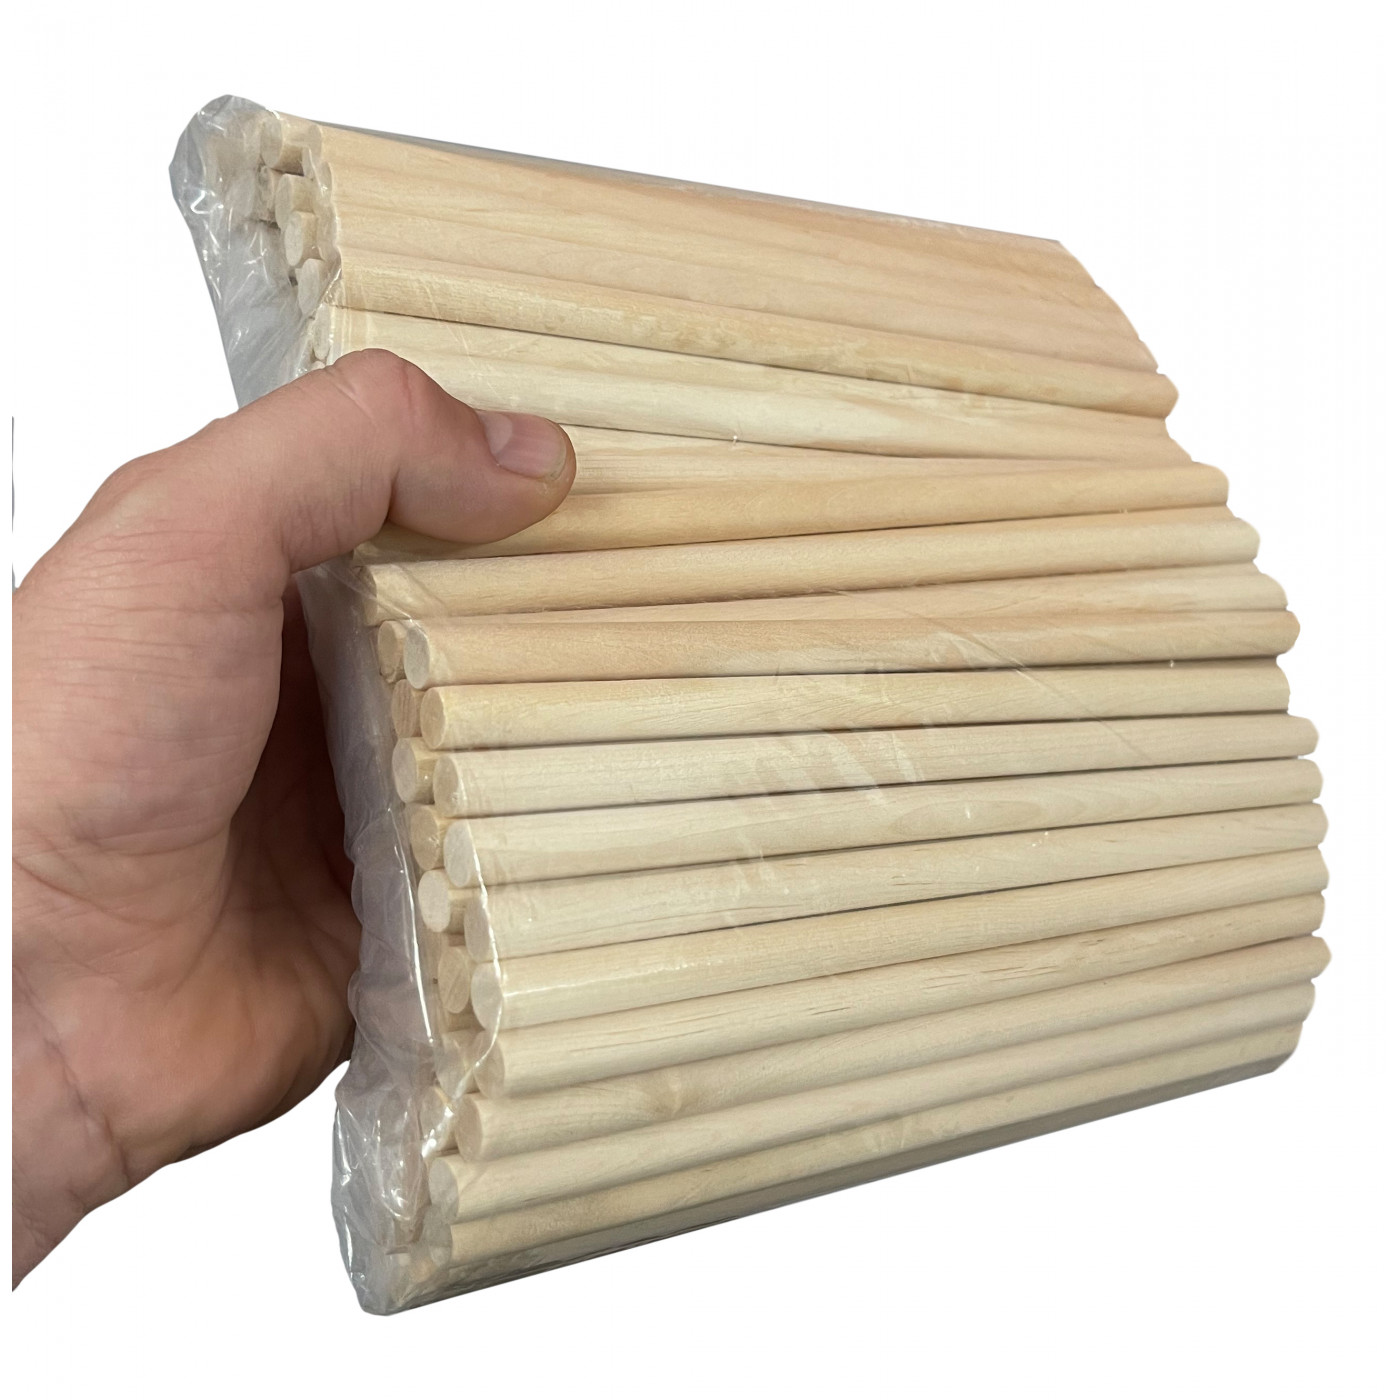 Ensemble de 100 bâtons en bois (longueur 30 cm, diamètre 10 mm